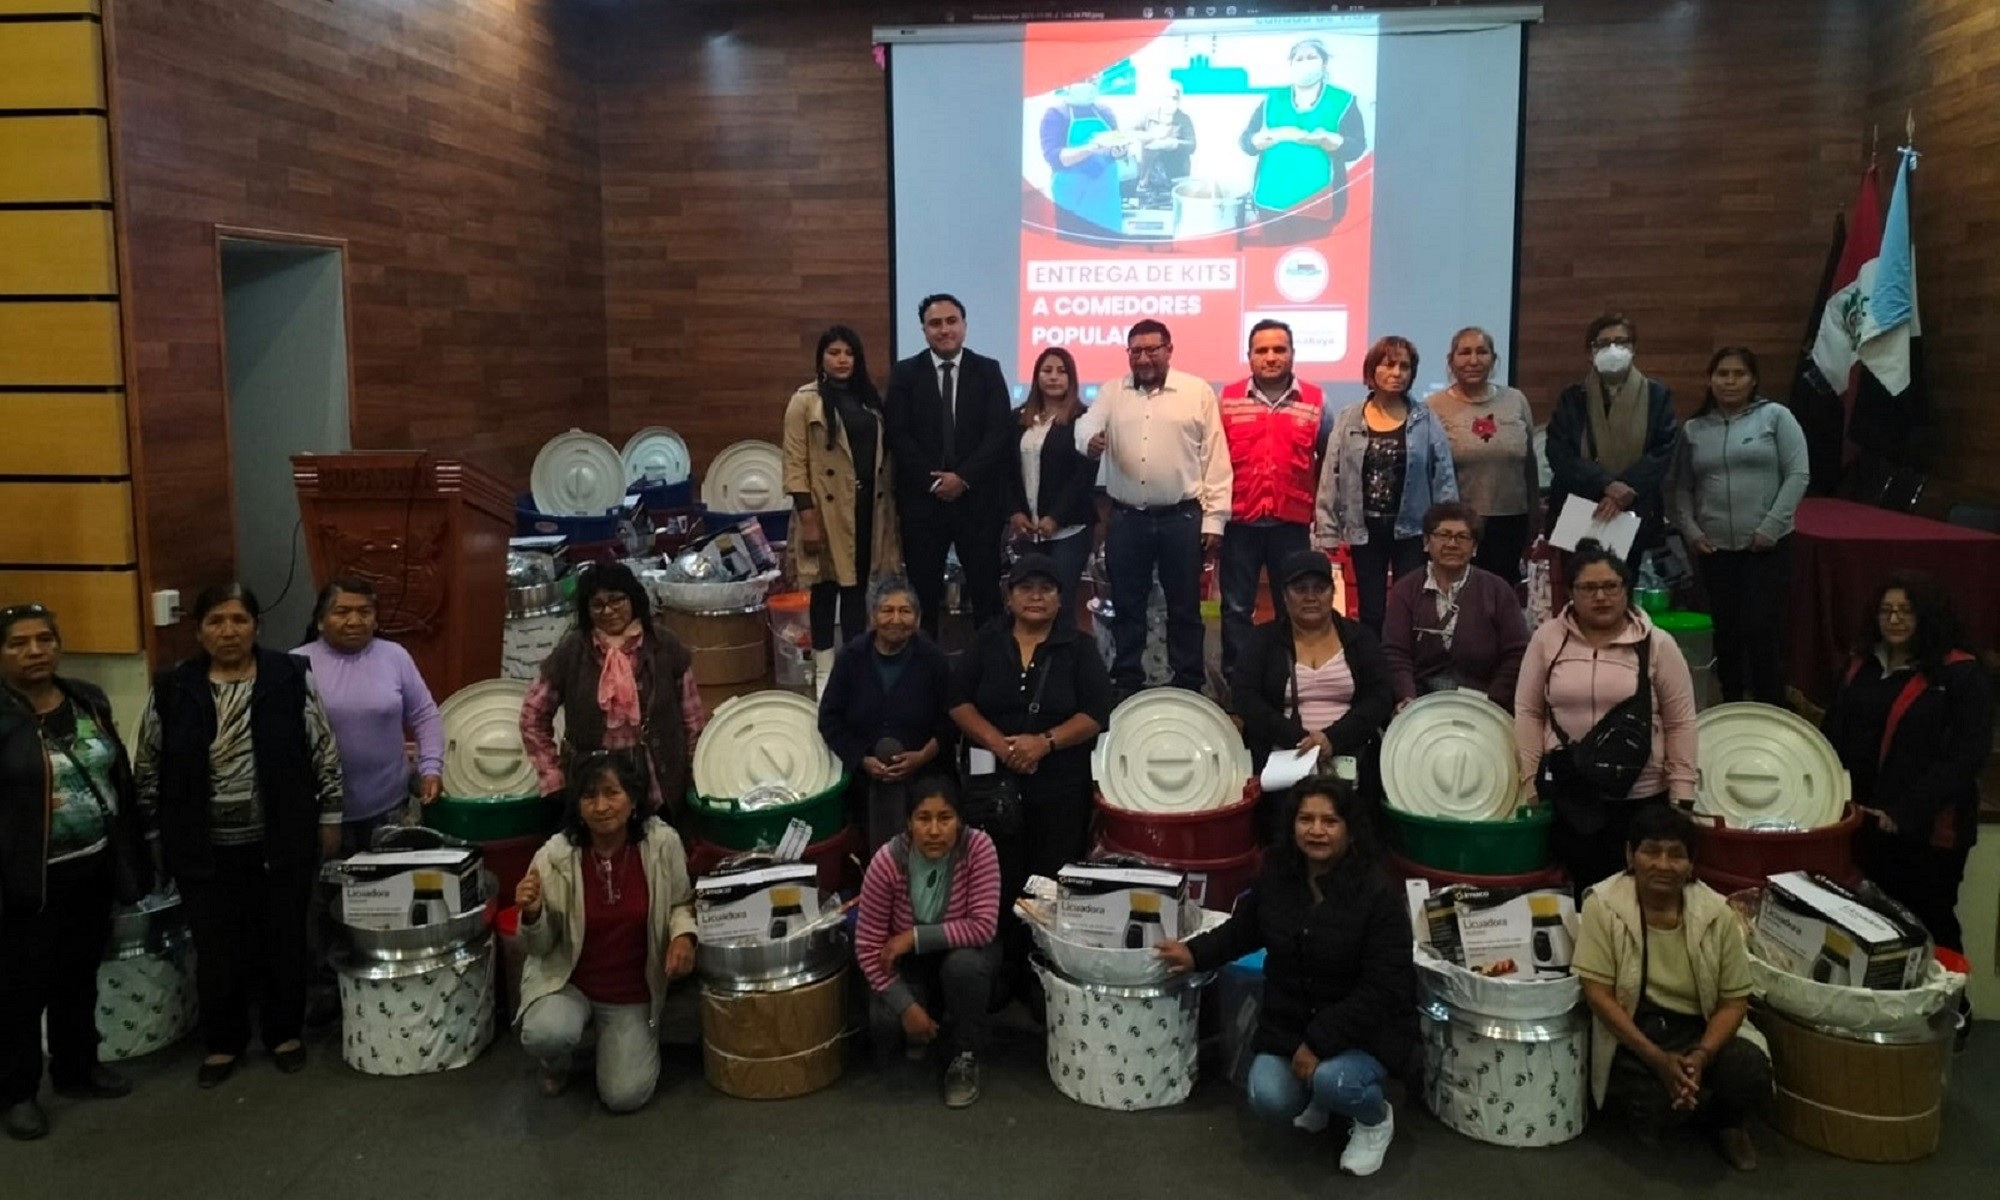 Iglesia de Jesucristo apoya con Kits de cocina a comedores populares de Socabaya, Arequipa.